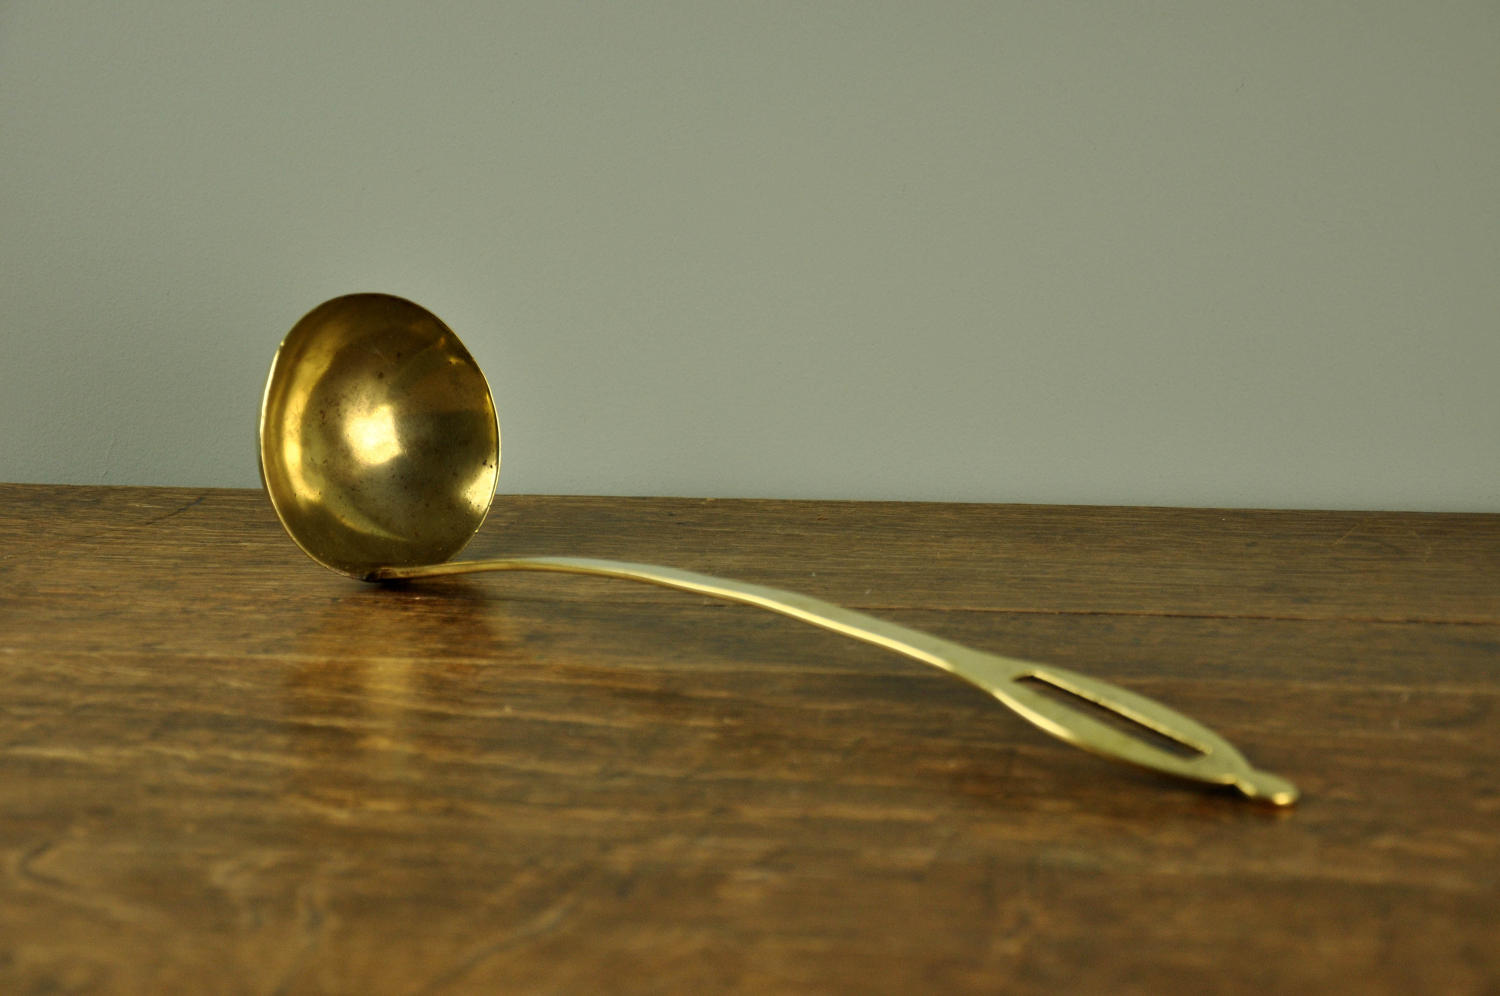 19th century brass ladle